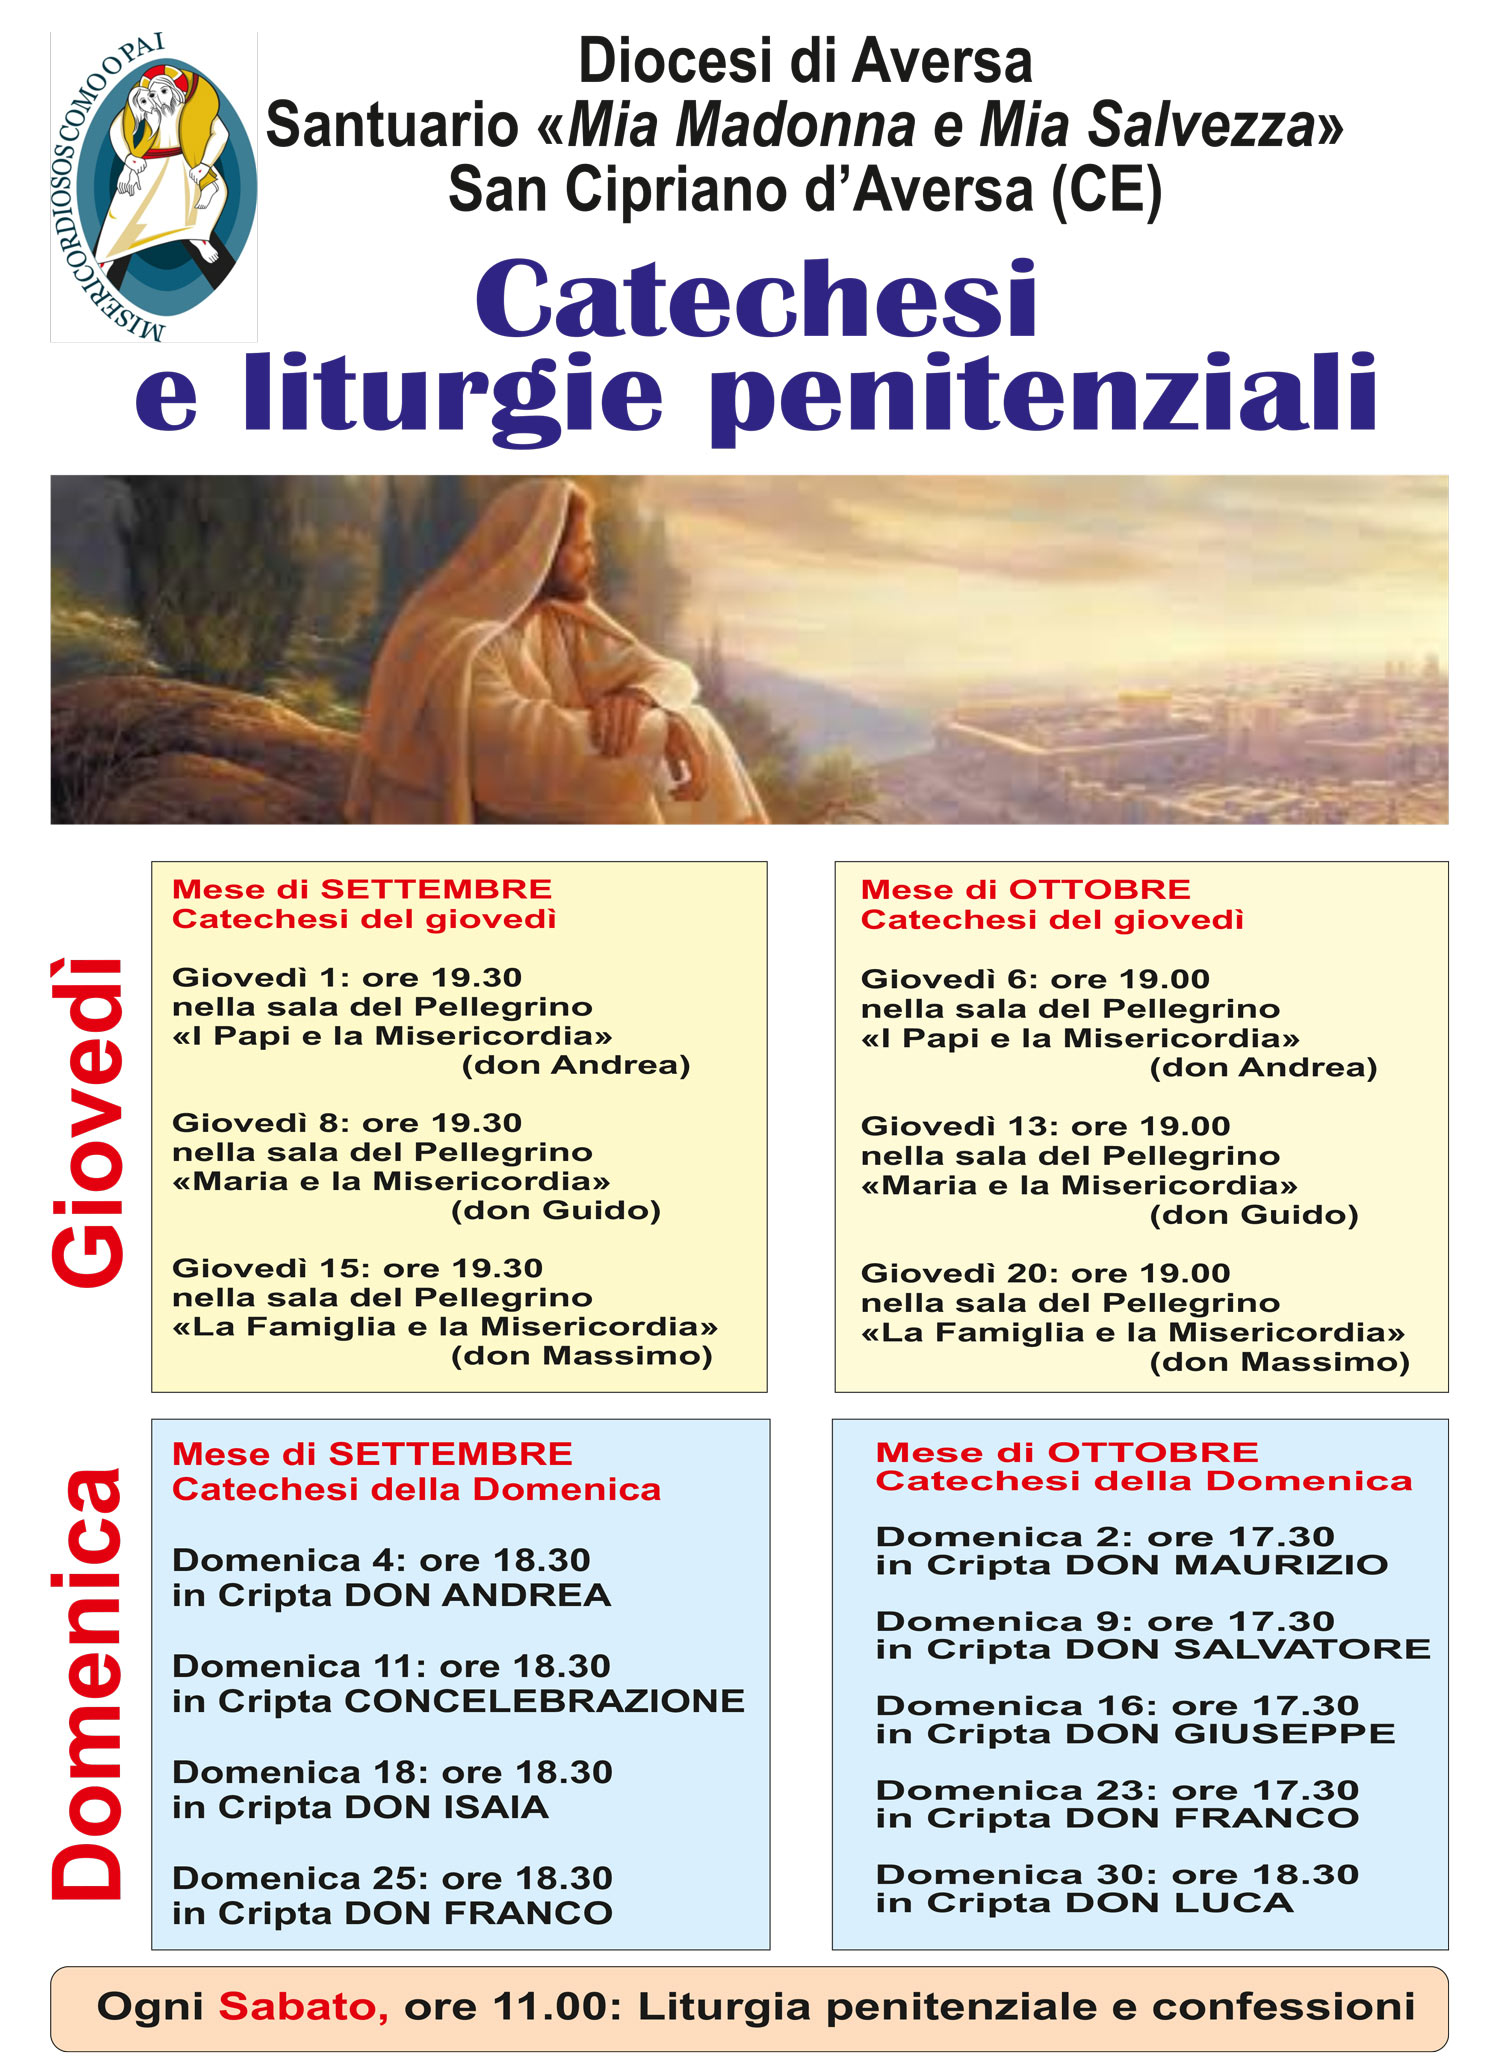 Santuario-Mia-Madonna-Catechesi-Settembre-Ottobre